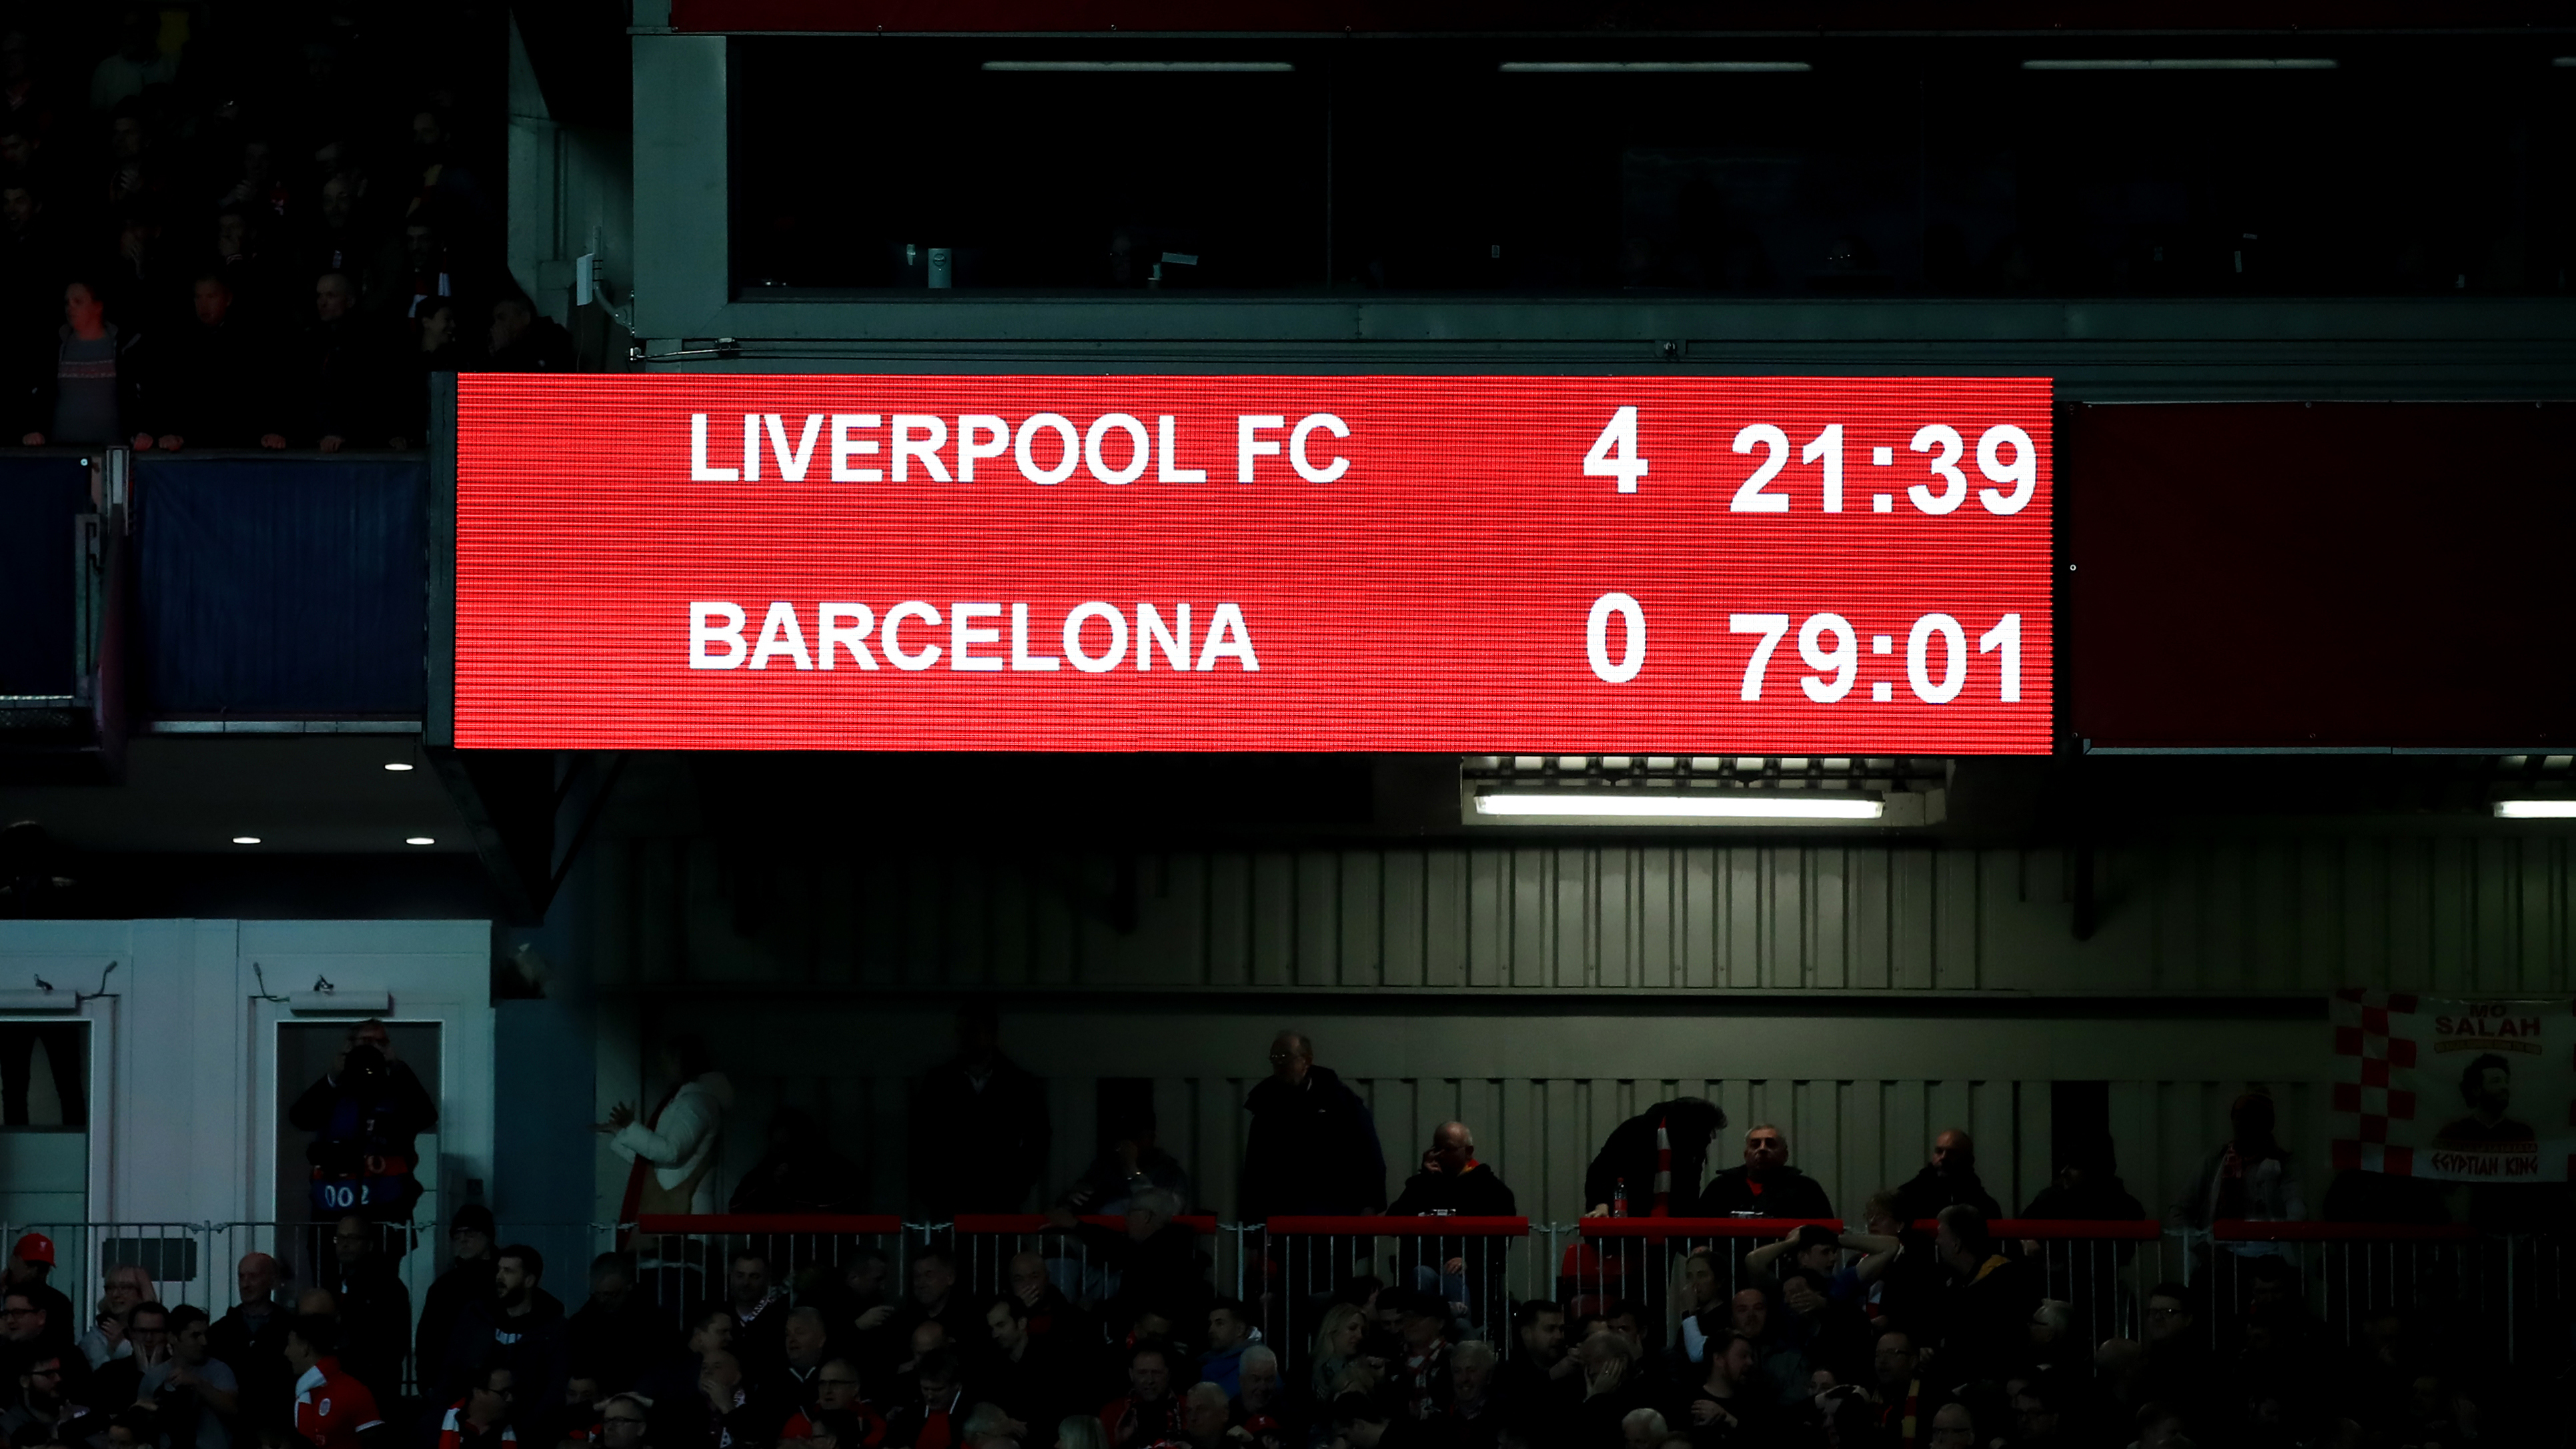 Liverpool scoreboard